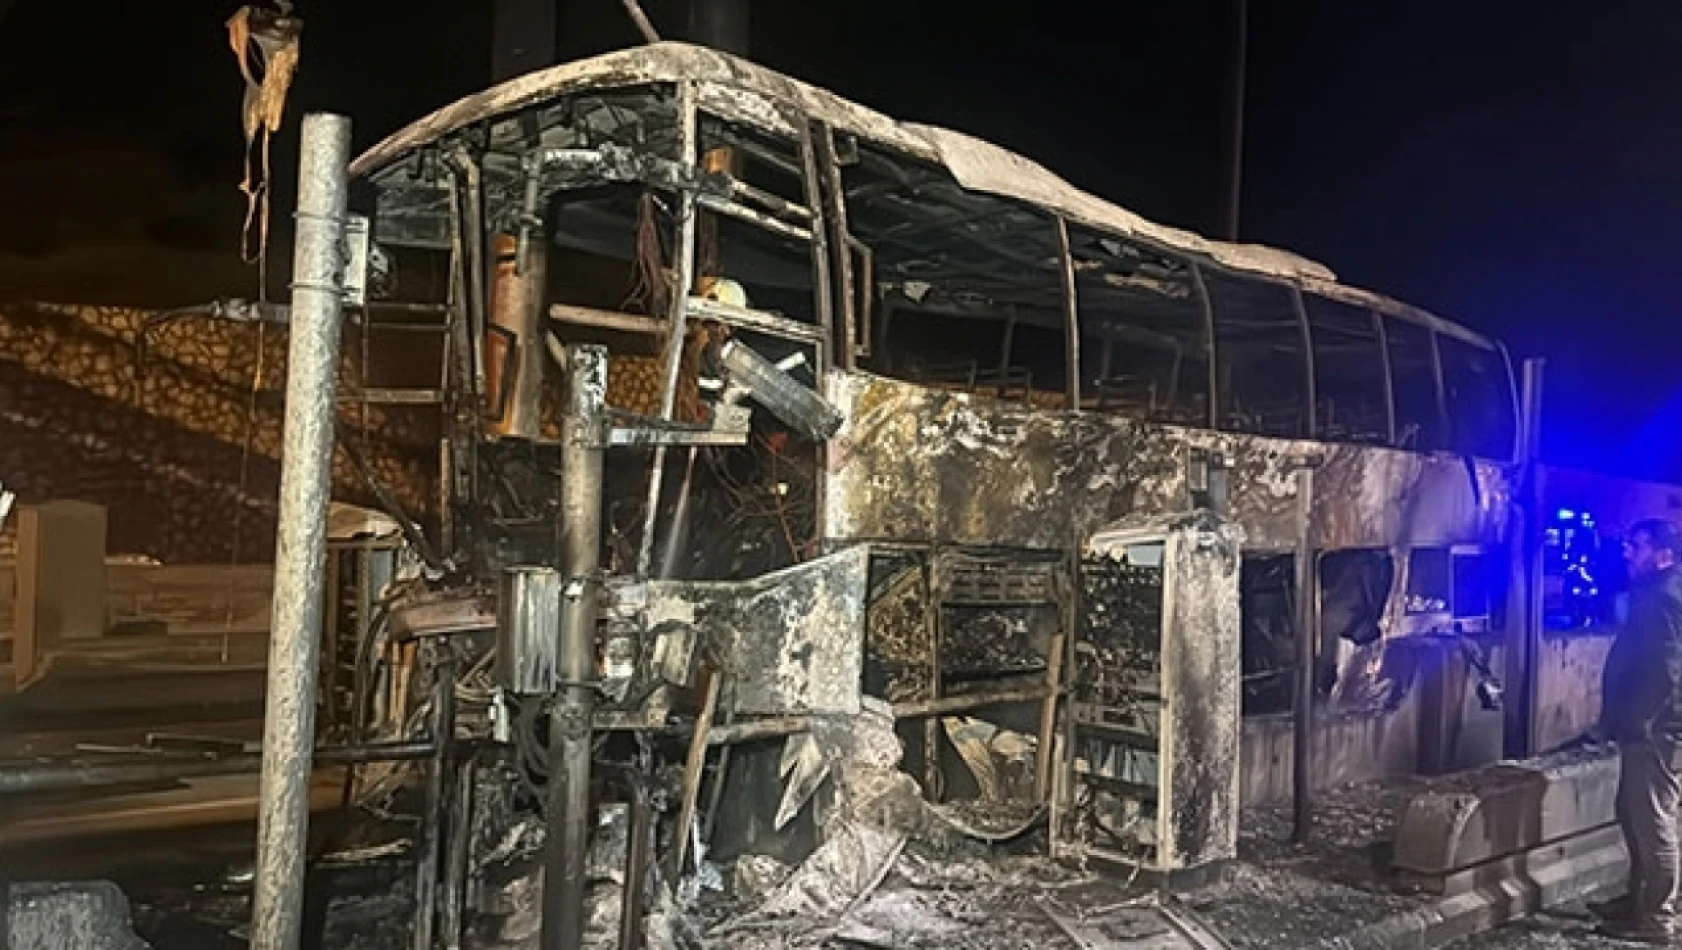 Gişe bariyerine çarparak alev alan yolcu otobüsündeki 6 kişi yaralandı